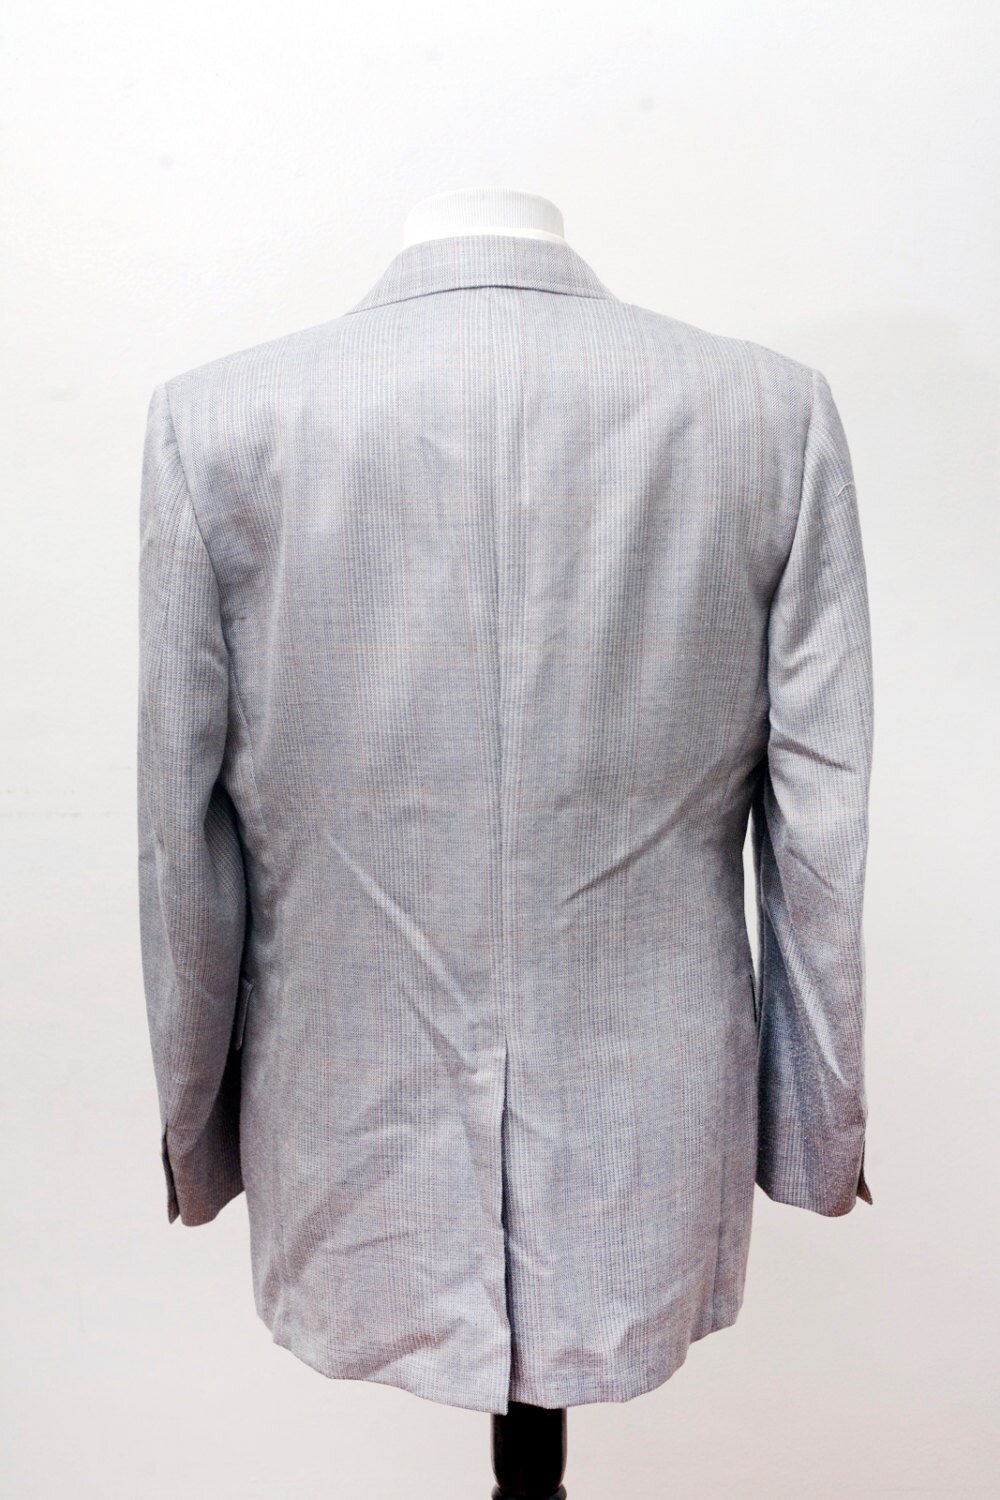 Men's Blazer / Vintage Grey Herringbone Jacket by Cricketeer / Size 42 ...